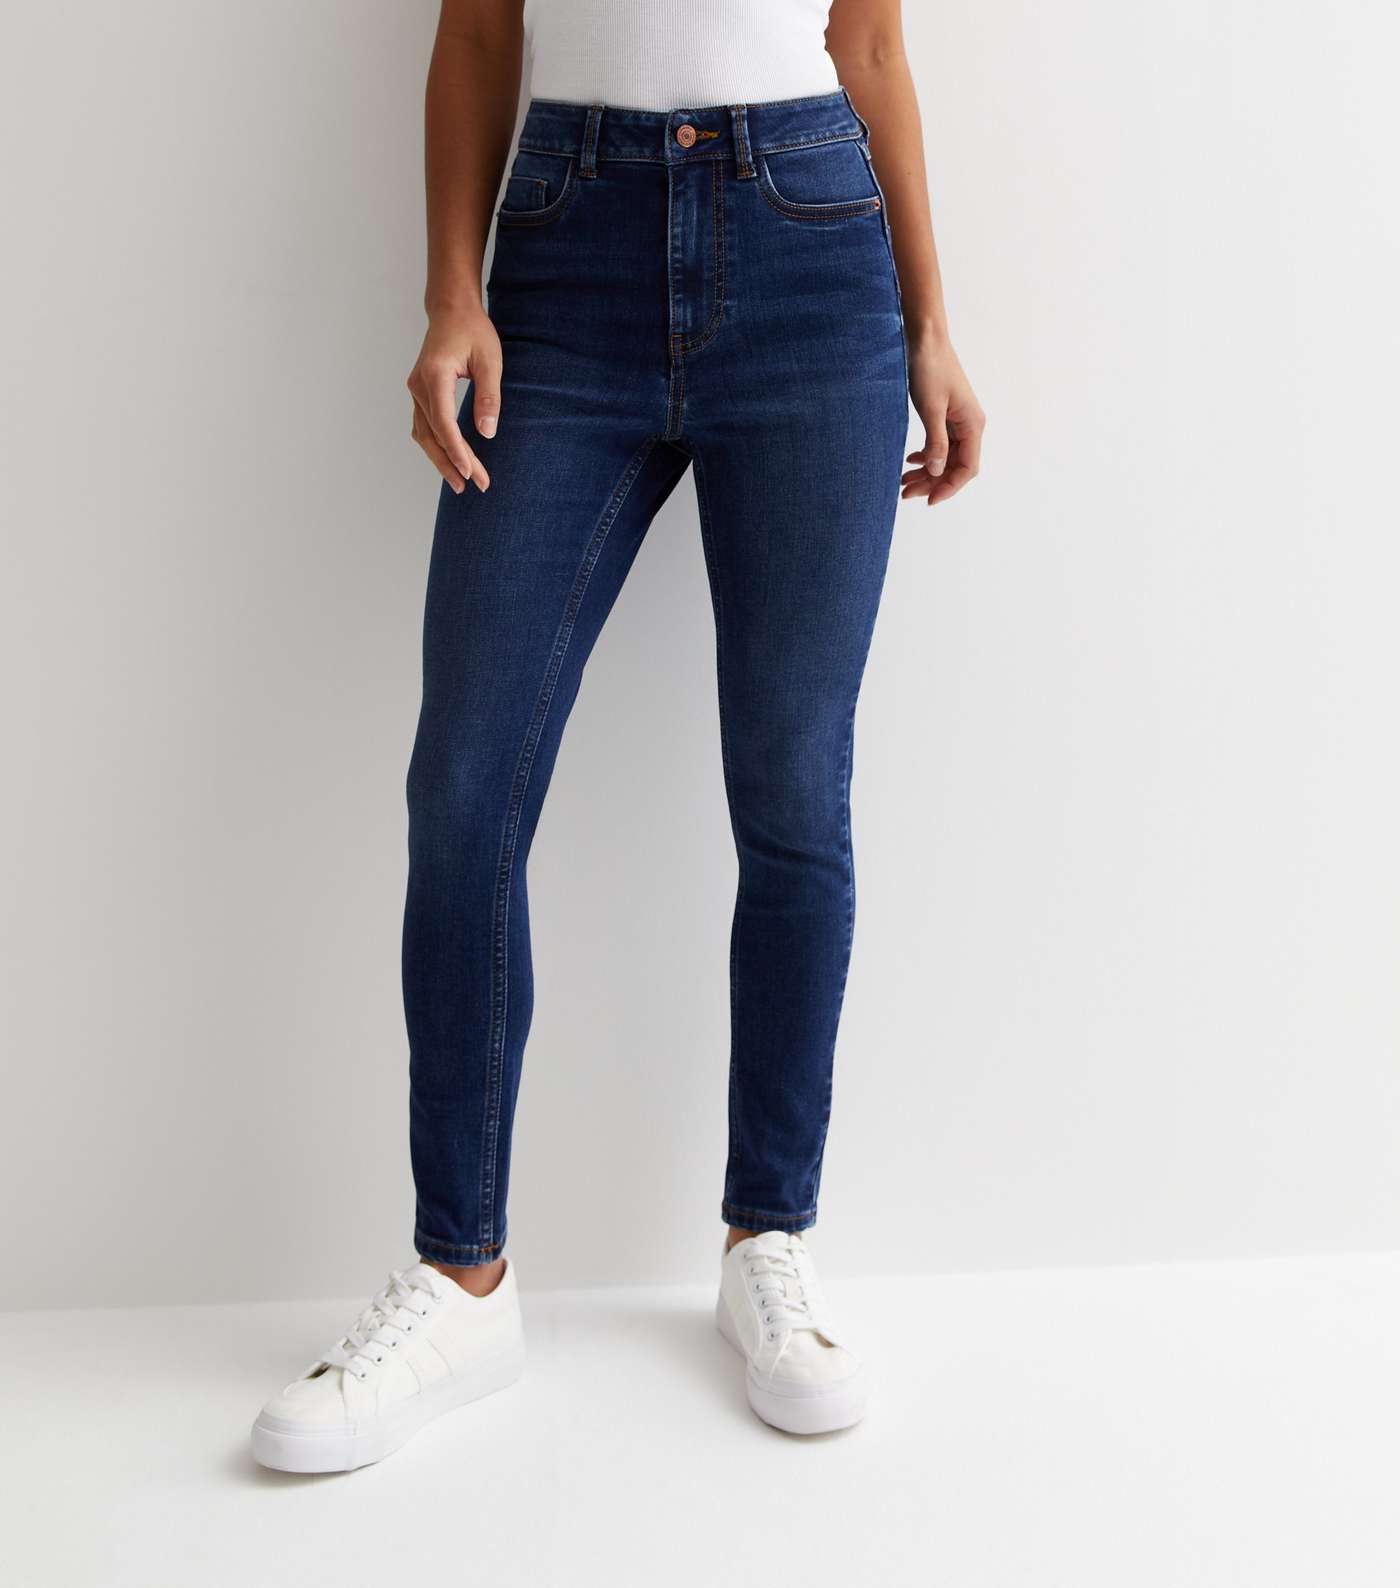 Petite Blue Lift & Shape Jenna Skinny Jeans Image 3